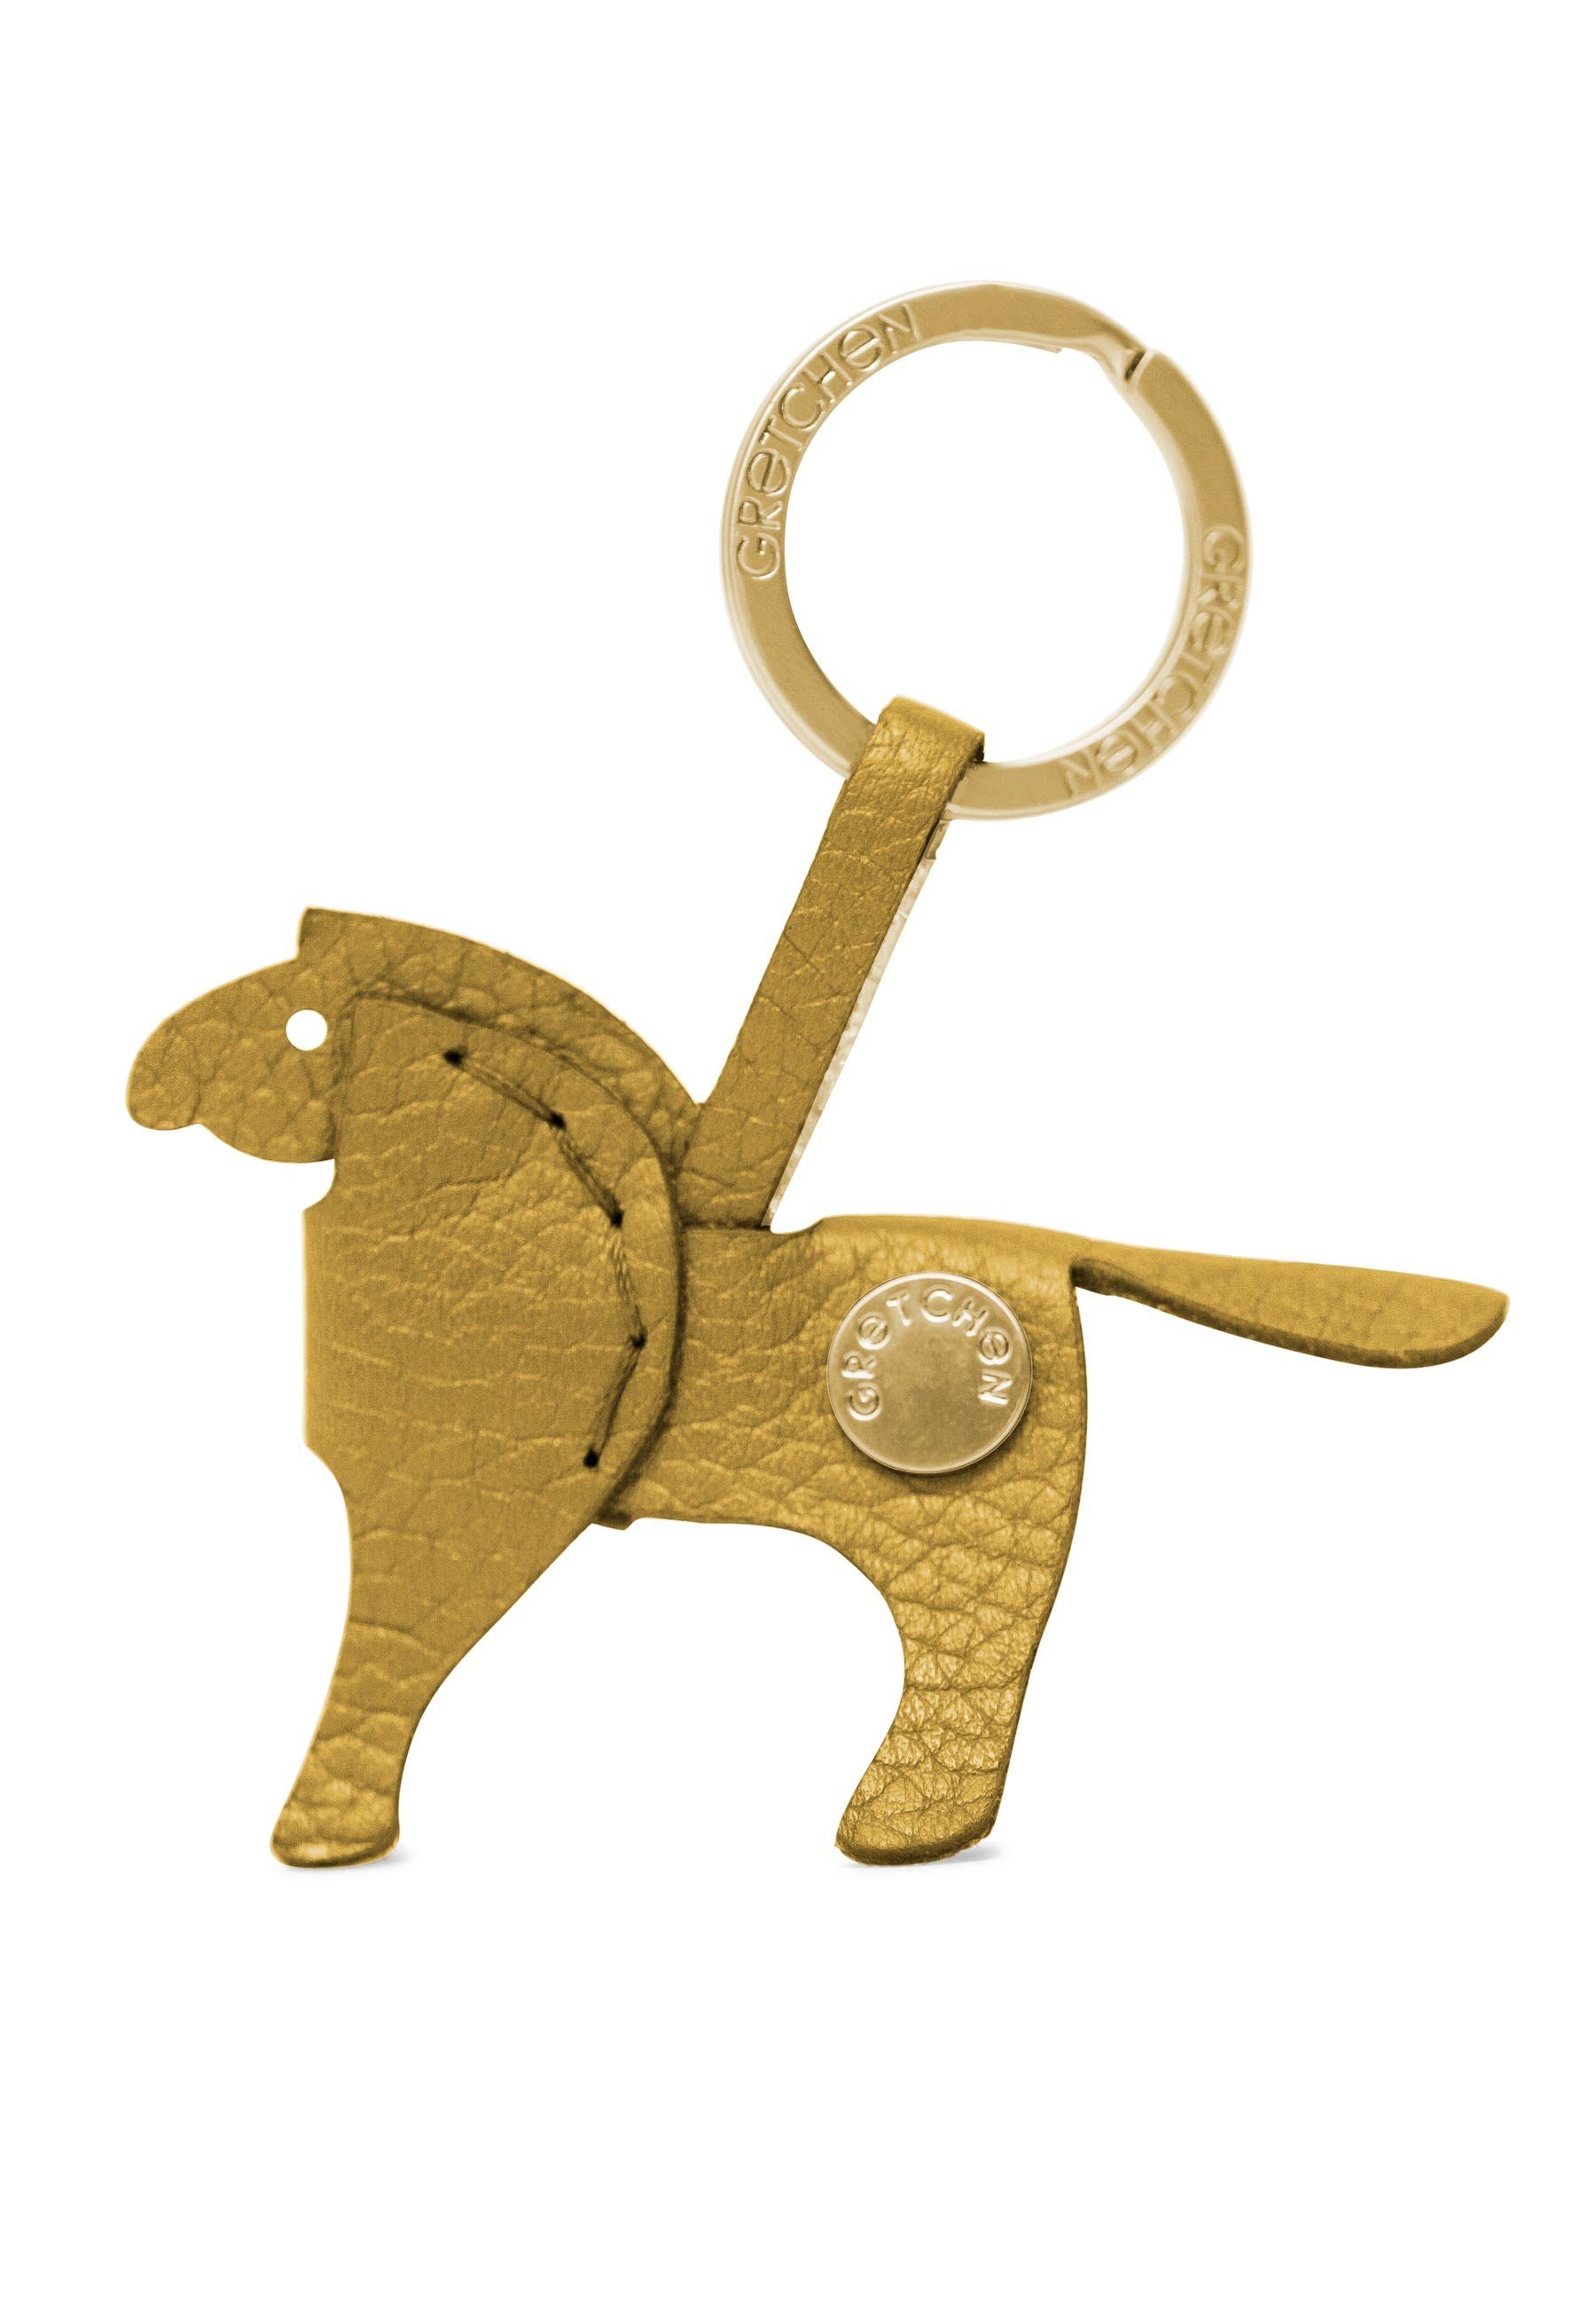 GRETCHEN Schlüsselanhänger Pony gelb-goldfarben Keyring, italienischem Kalbsleder aus